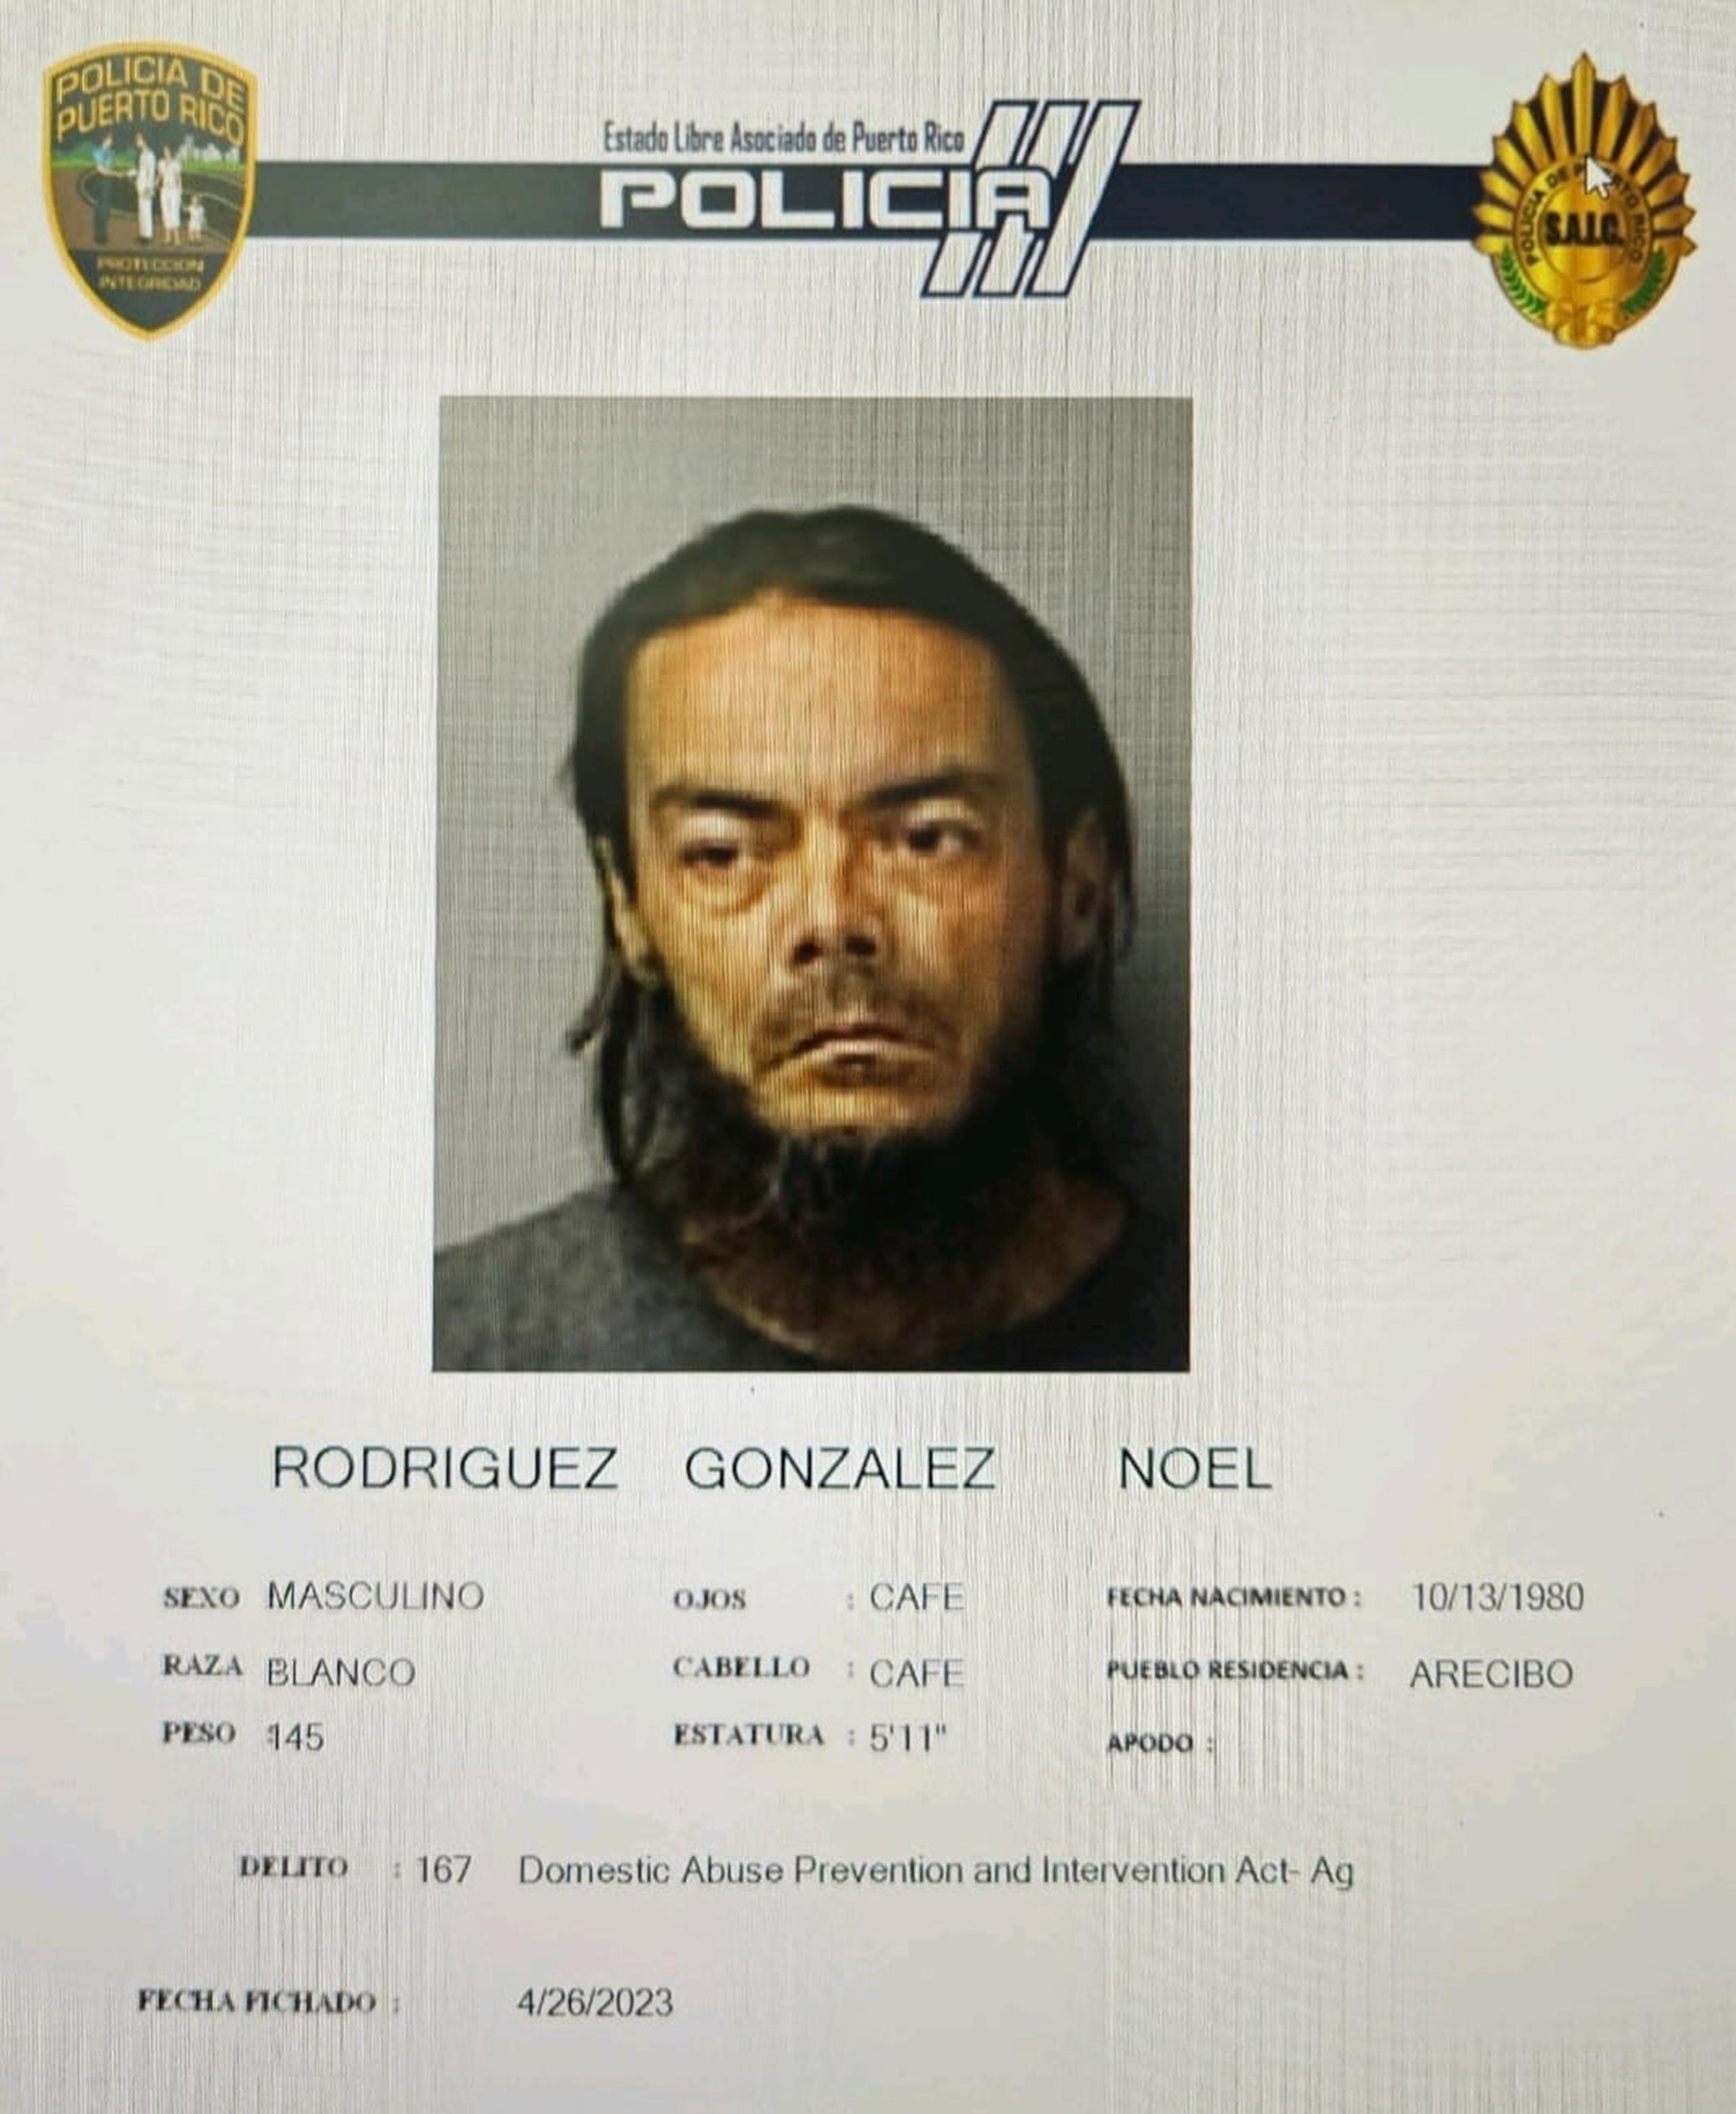 Noel Rodríguez González, alegó que iba manejando el automóvil cuando dispararon contra la pasajera a quien asesinaron en la urbanización Reparto Martell, en Arecibo.